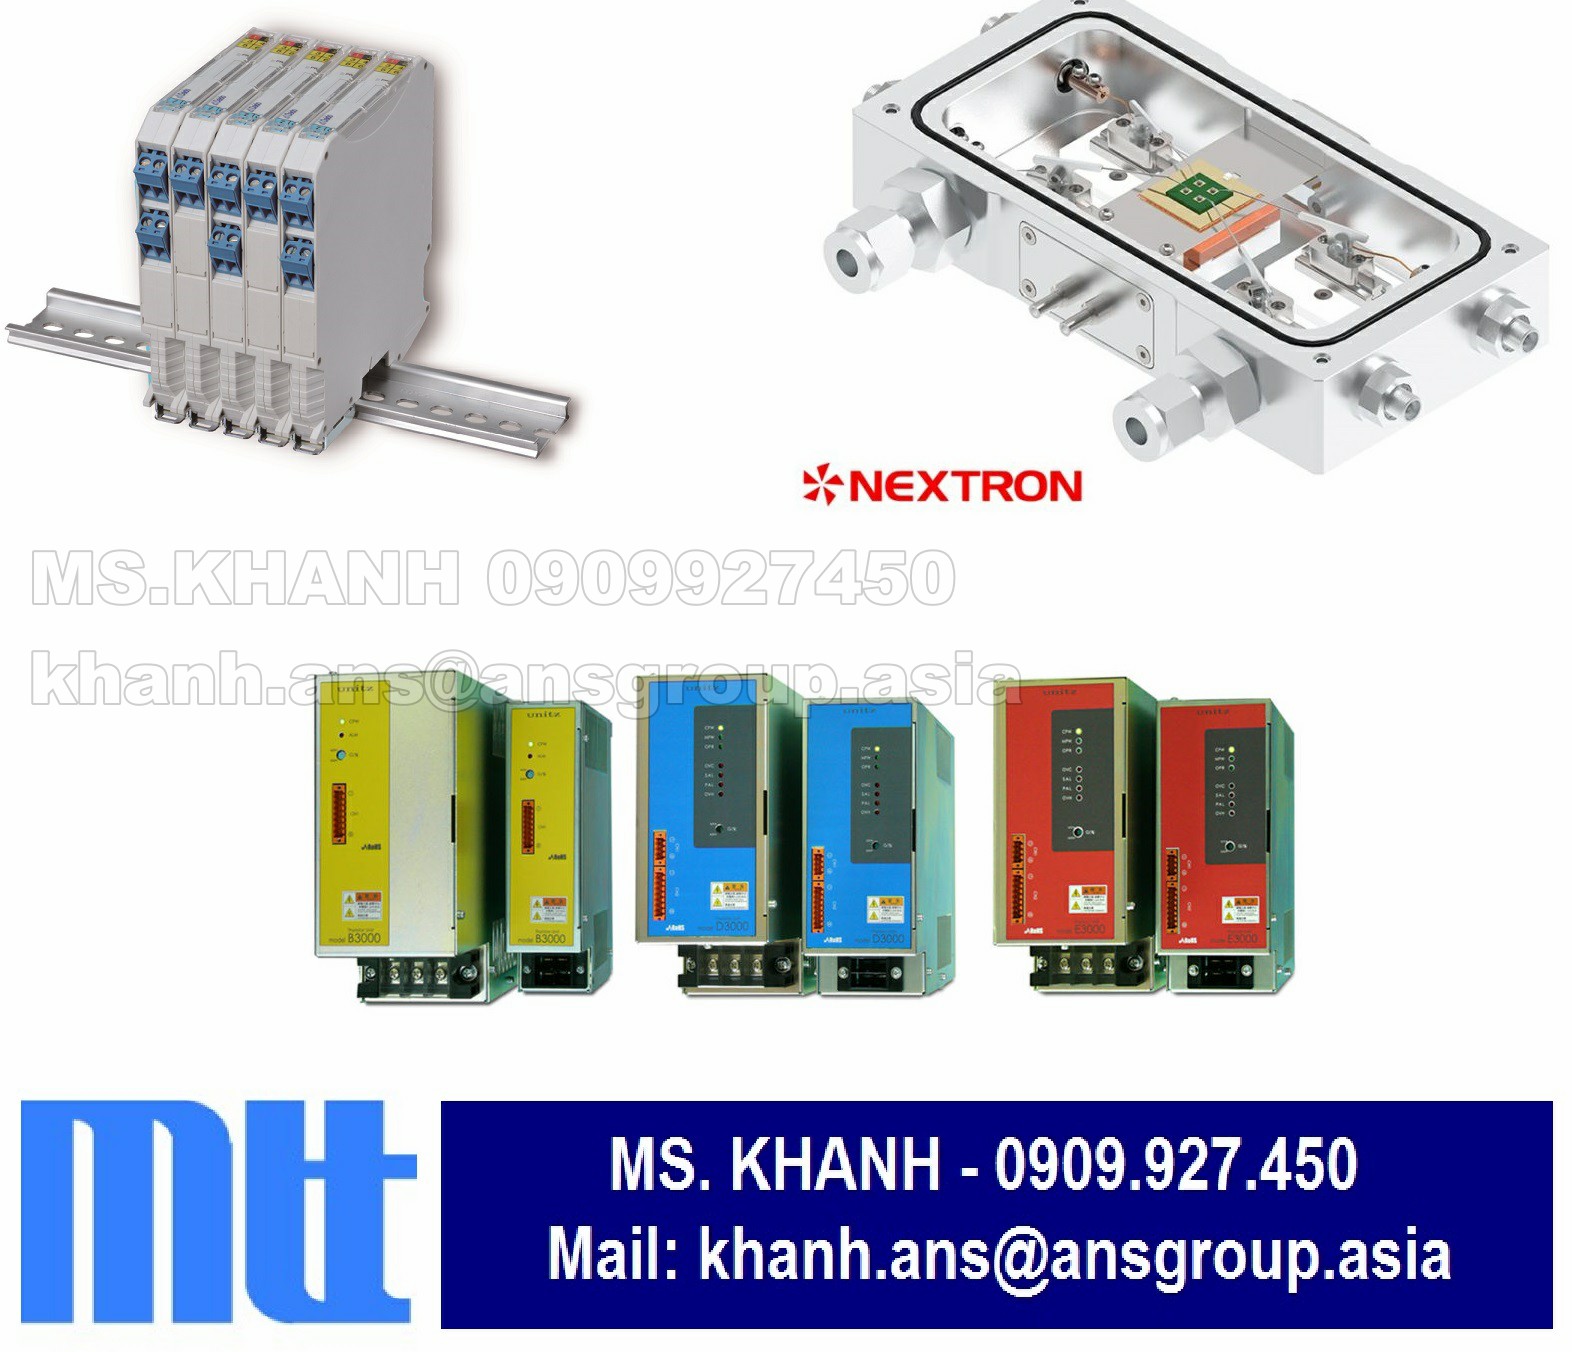 phu-kien-ms3703-d-04-k-jp-slim-plug-in-millivolt-isolator-mtt-vietnam-1.png